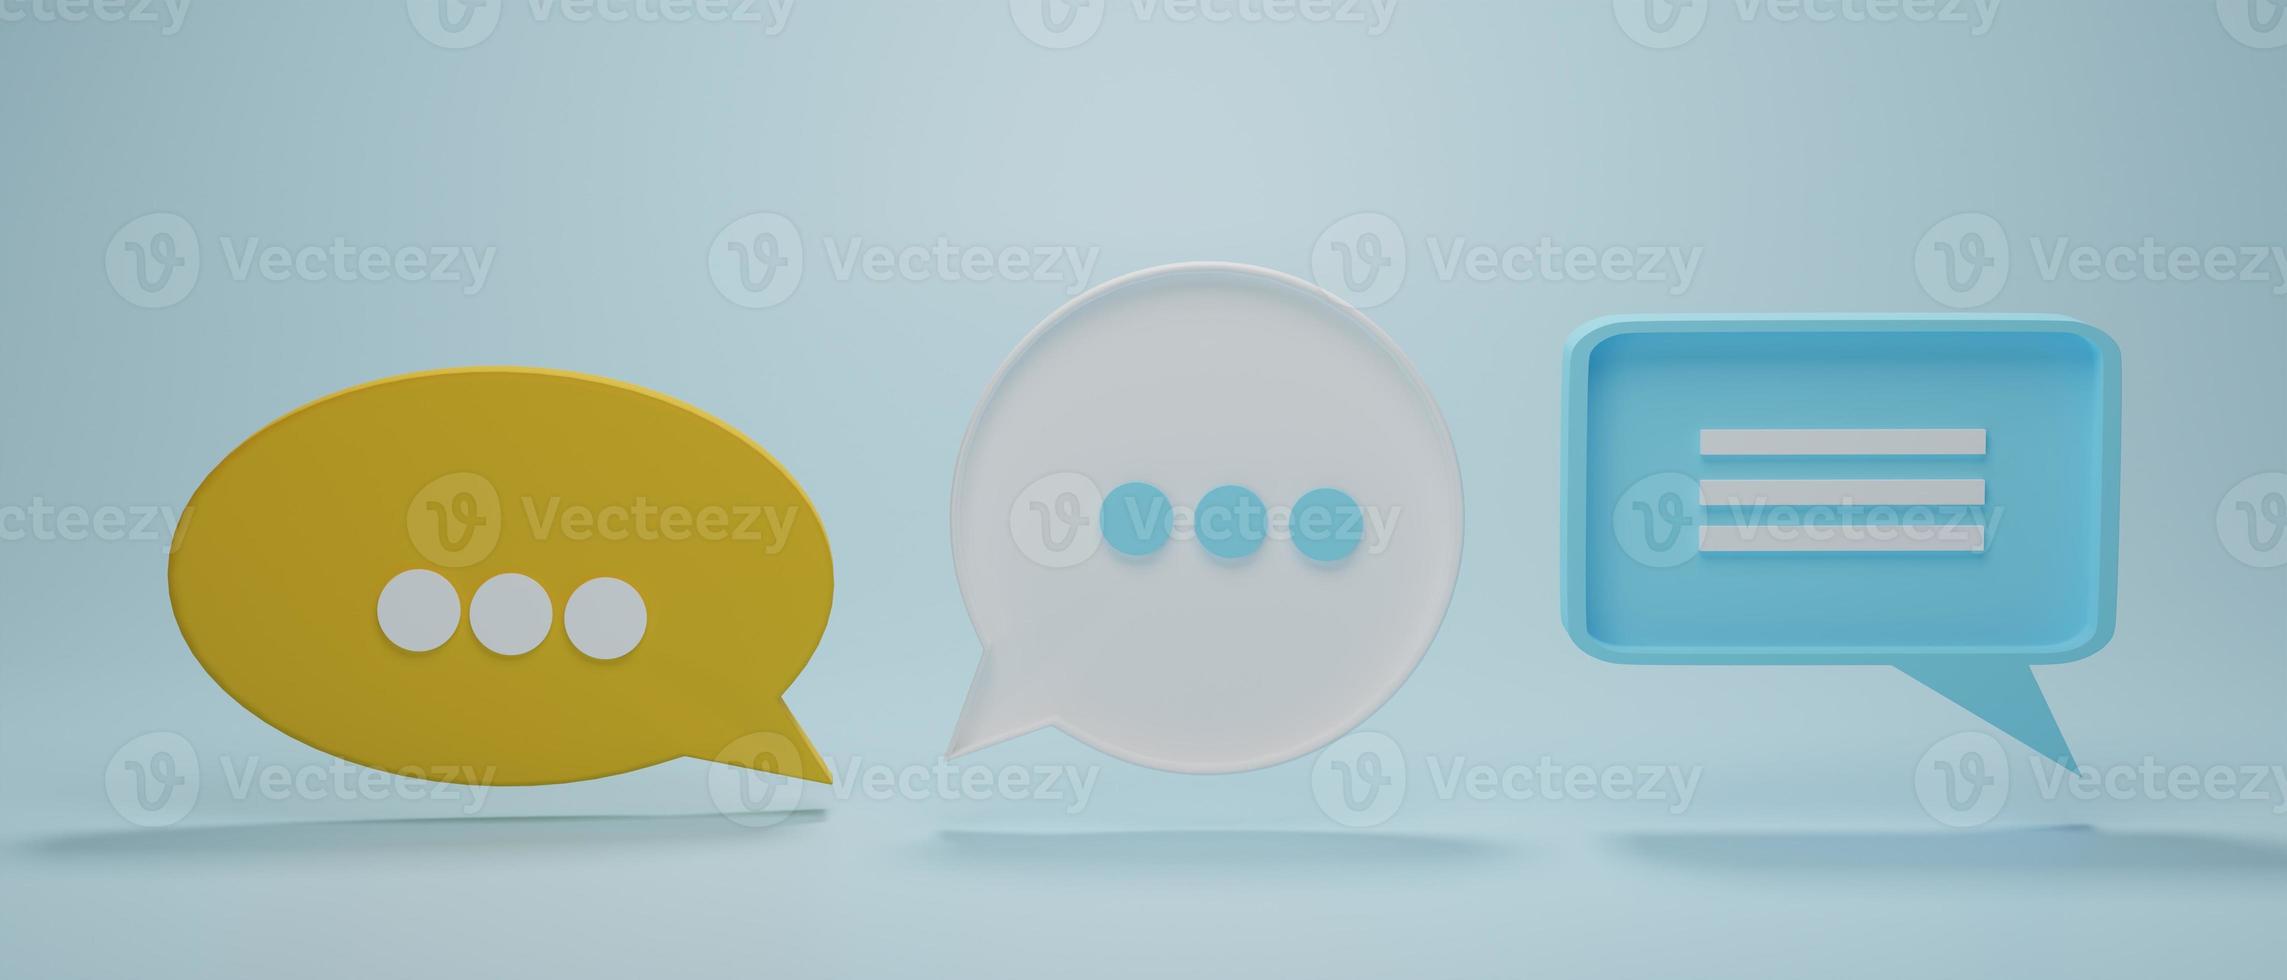 set van 3 chat bubble pictogram of tekstballonnen symbool op blauwe pastel achtergrond. concept van chat, communicatie of dialoog. 3D-rendering illustratie. foto